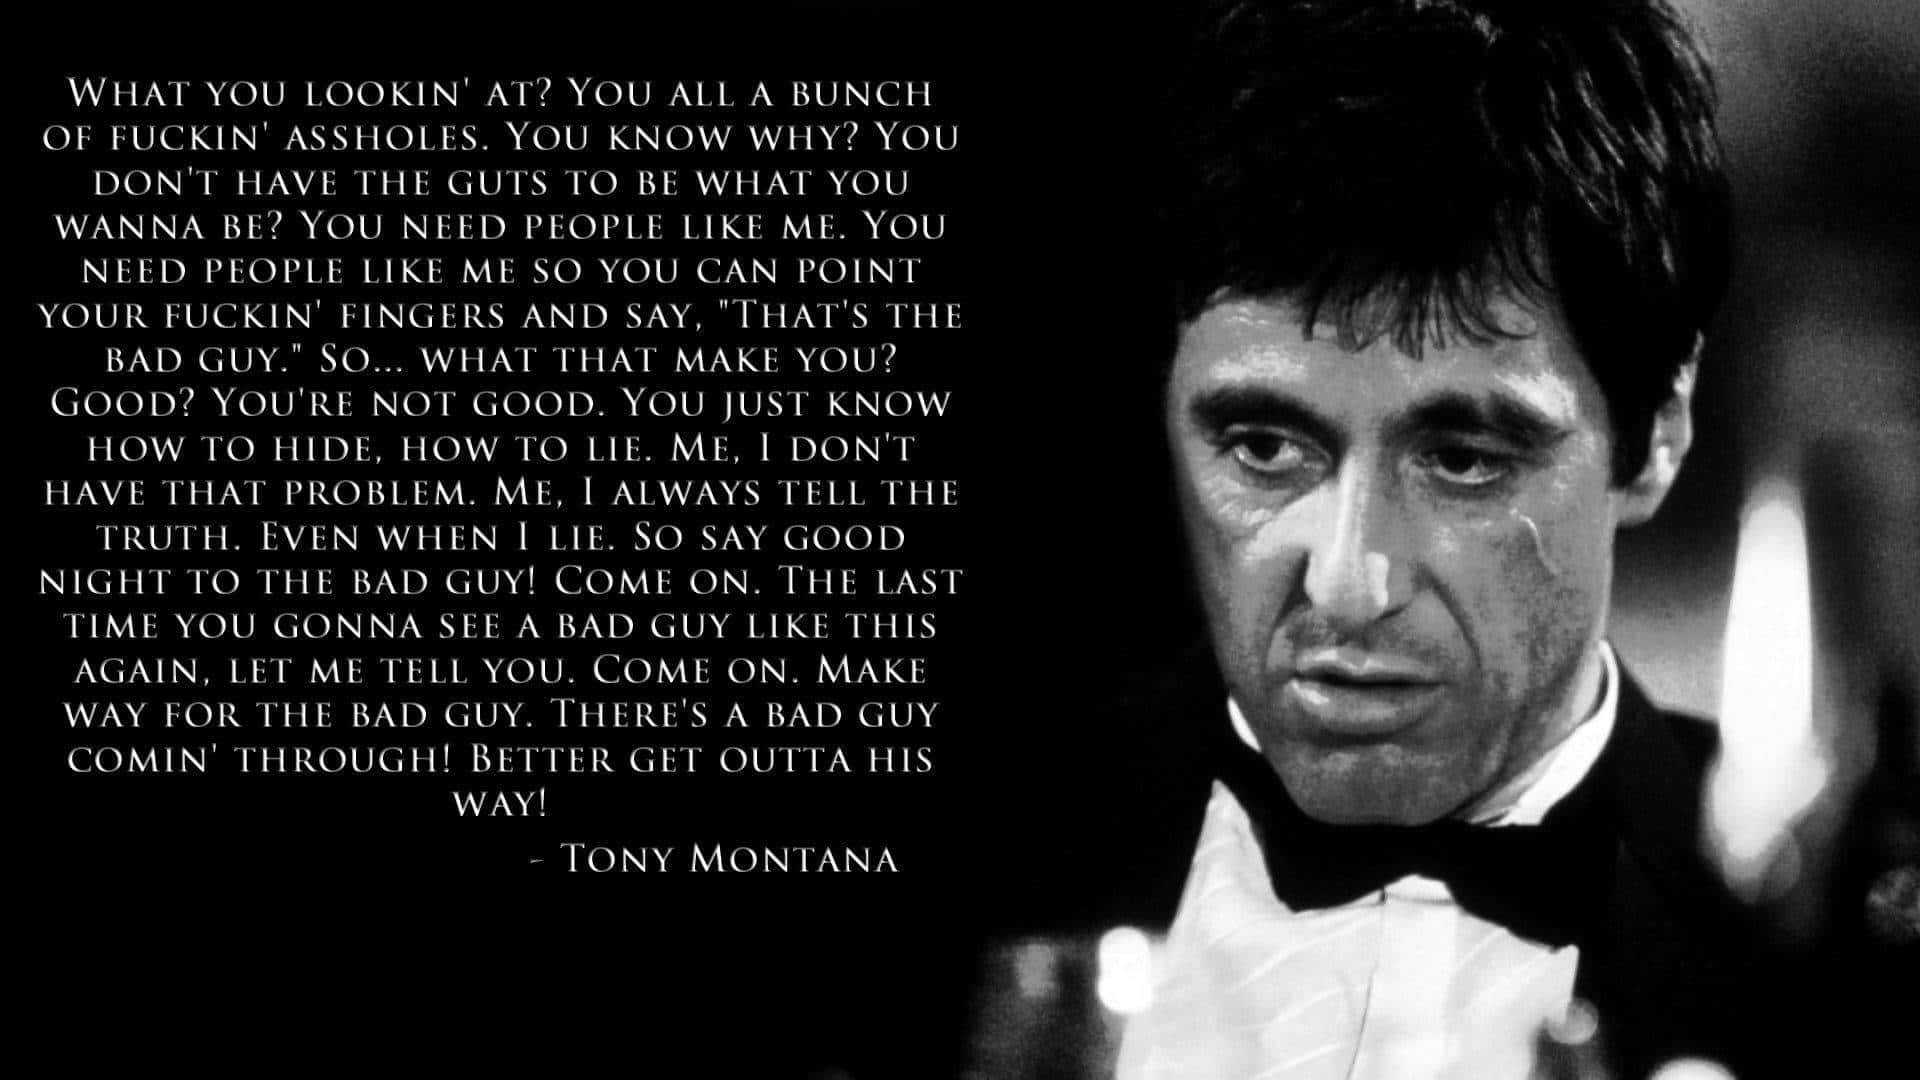 Tony Montana, The Classic Anti-hero of Scarface